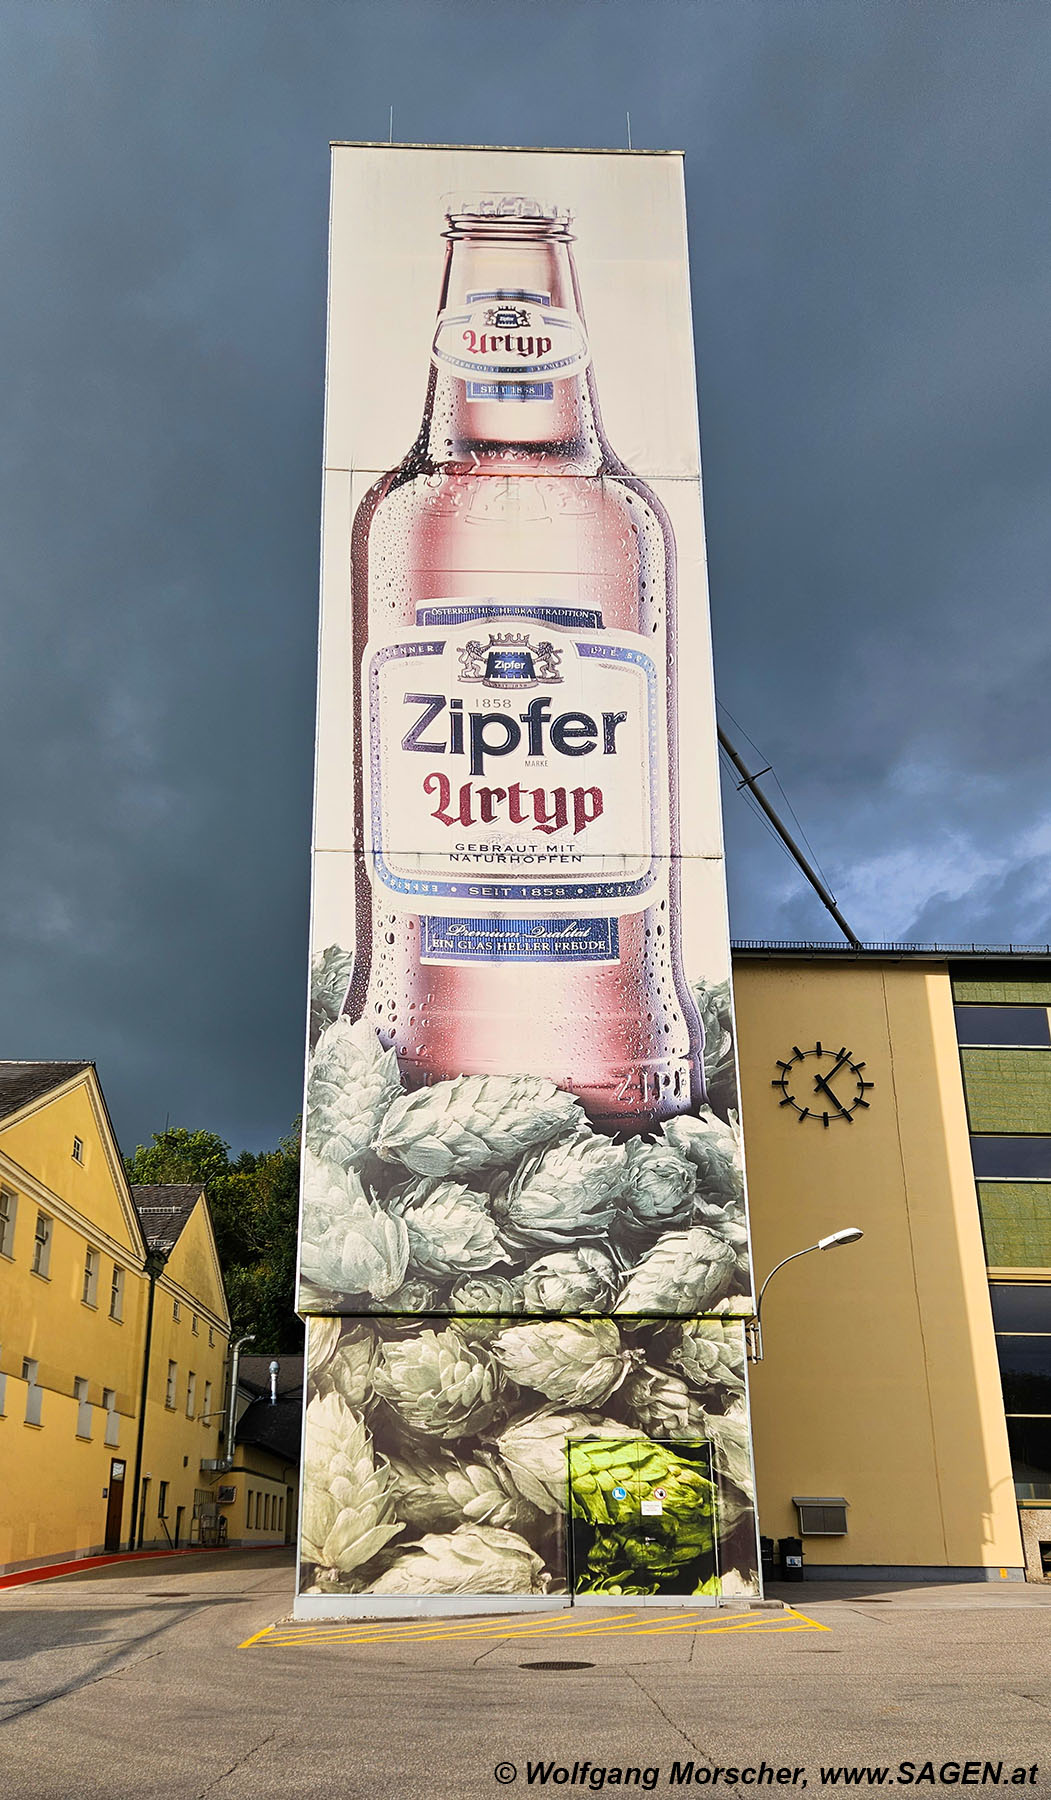 Riesenbierflasche Werbung